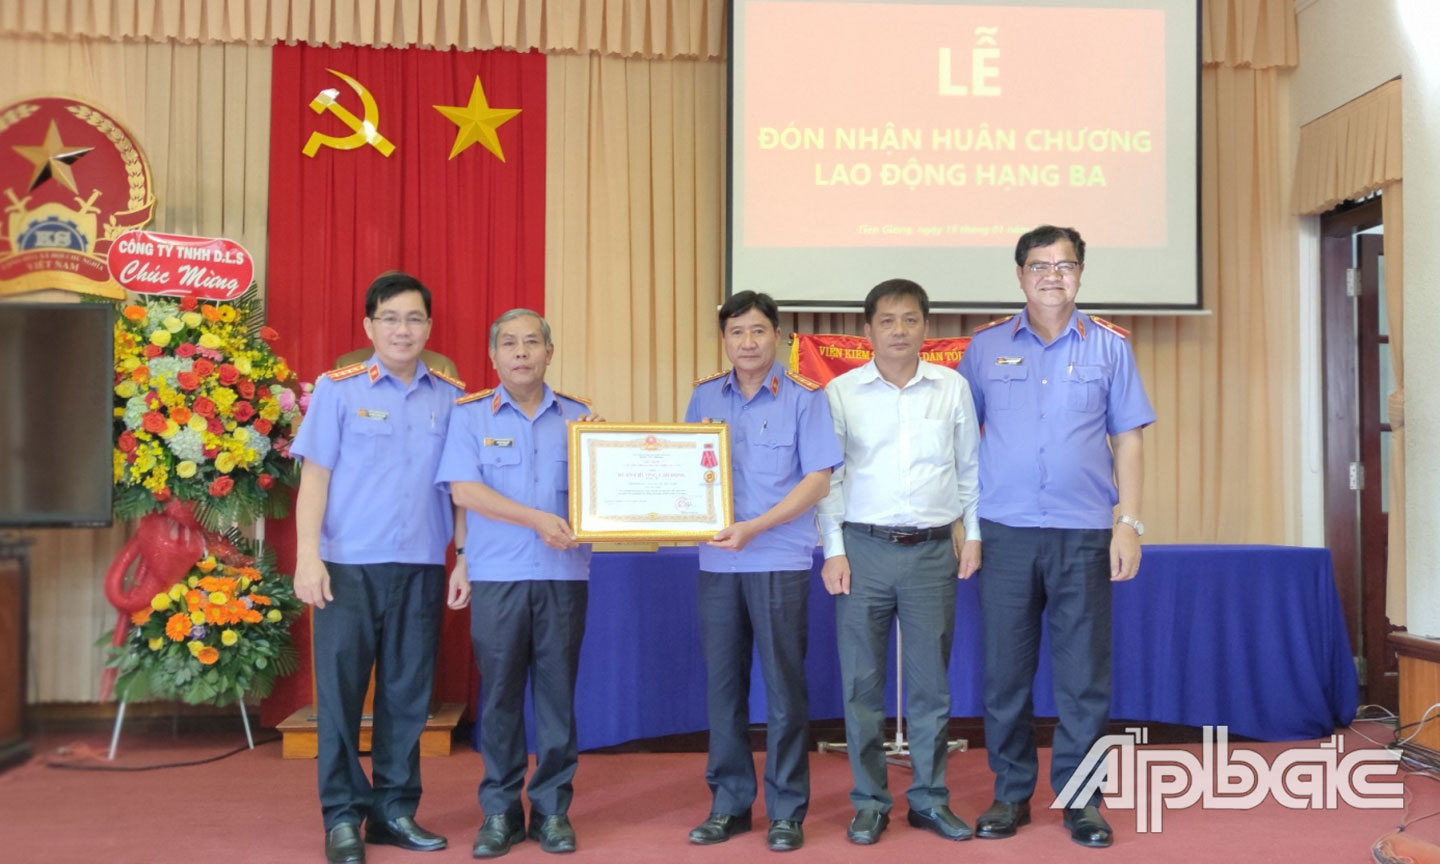 Đồng chí Trương Văn Chung – Phó Trưởng Ban Nội chính Tỉnh ủy, Ban lãnh đạo VKSND tỉnh trao Huân chương Lao động hạng Ba cho VKSND huyện Cái Bè